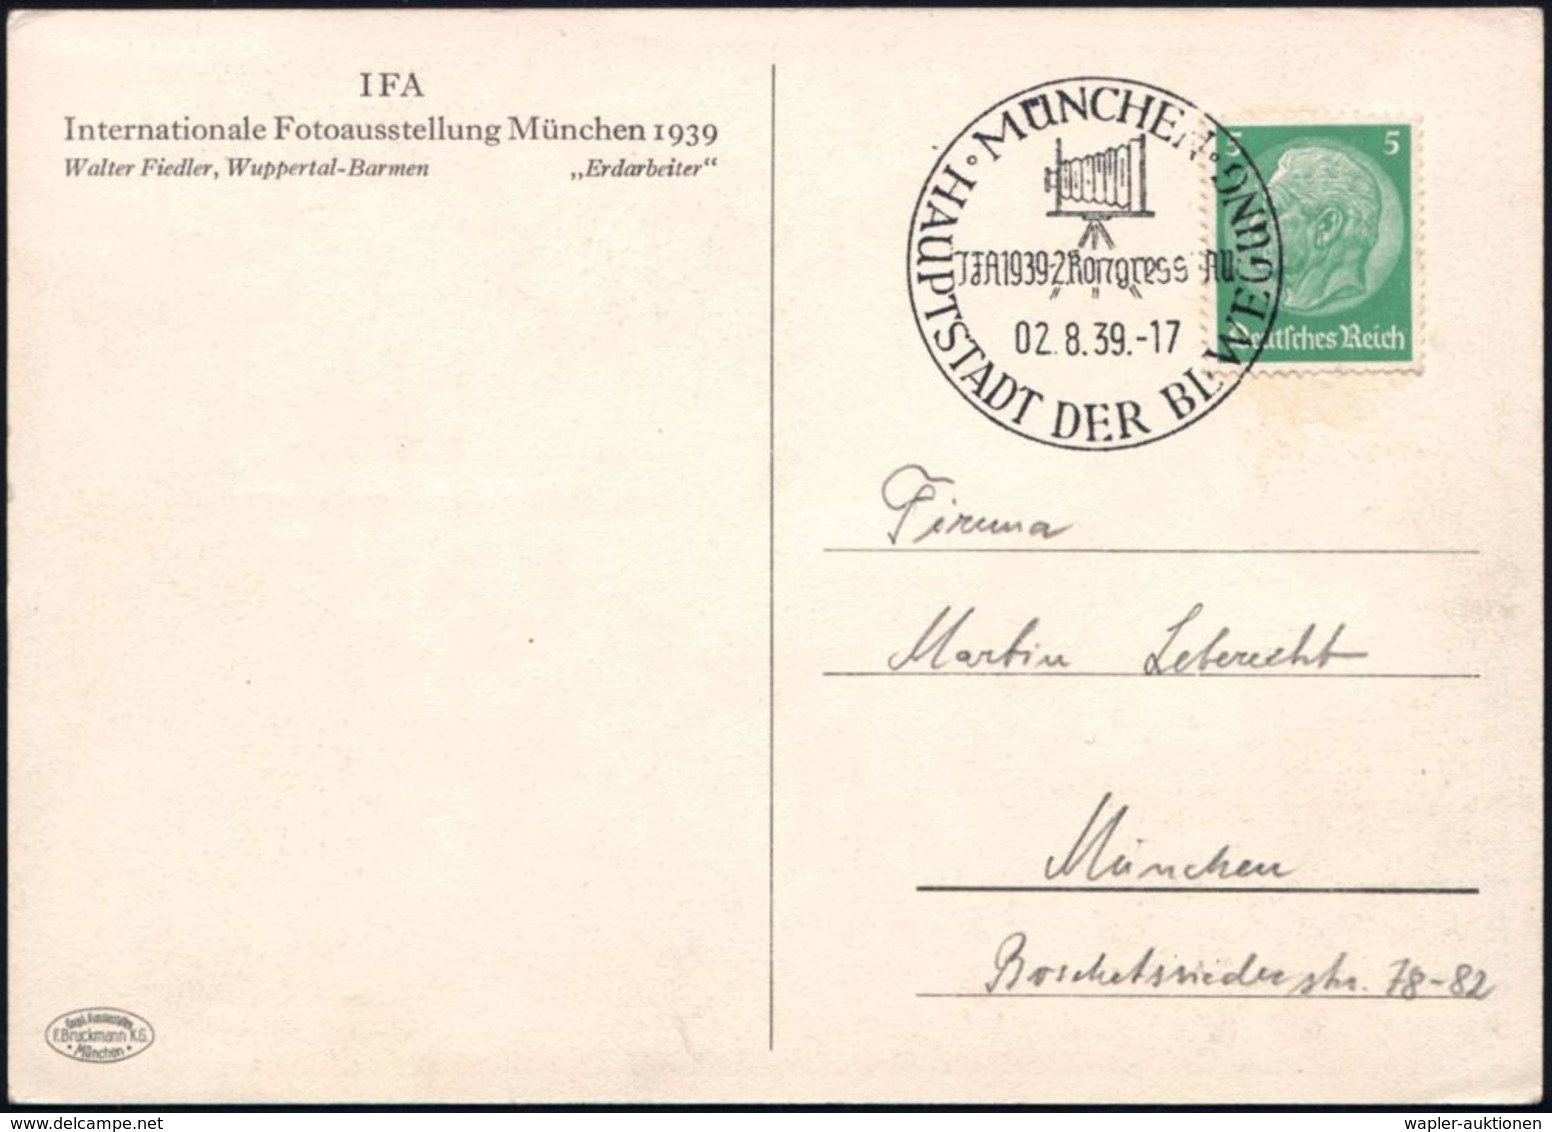 MÜNCHEN/ JFA 1939-Kongress JAU/ HDB 1939 (2.8.) SSt = Balgen-Kamera (auf Stativ) Auf S/w.-Sonder-Kt.: IFA/ Inter-nationa - Photographie